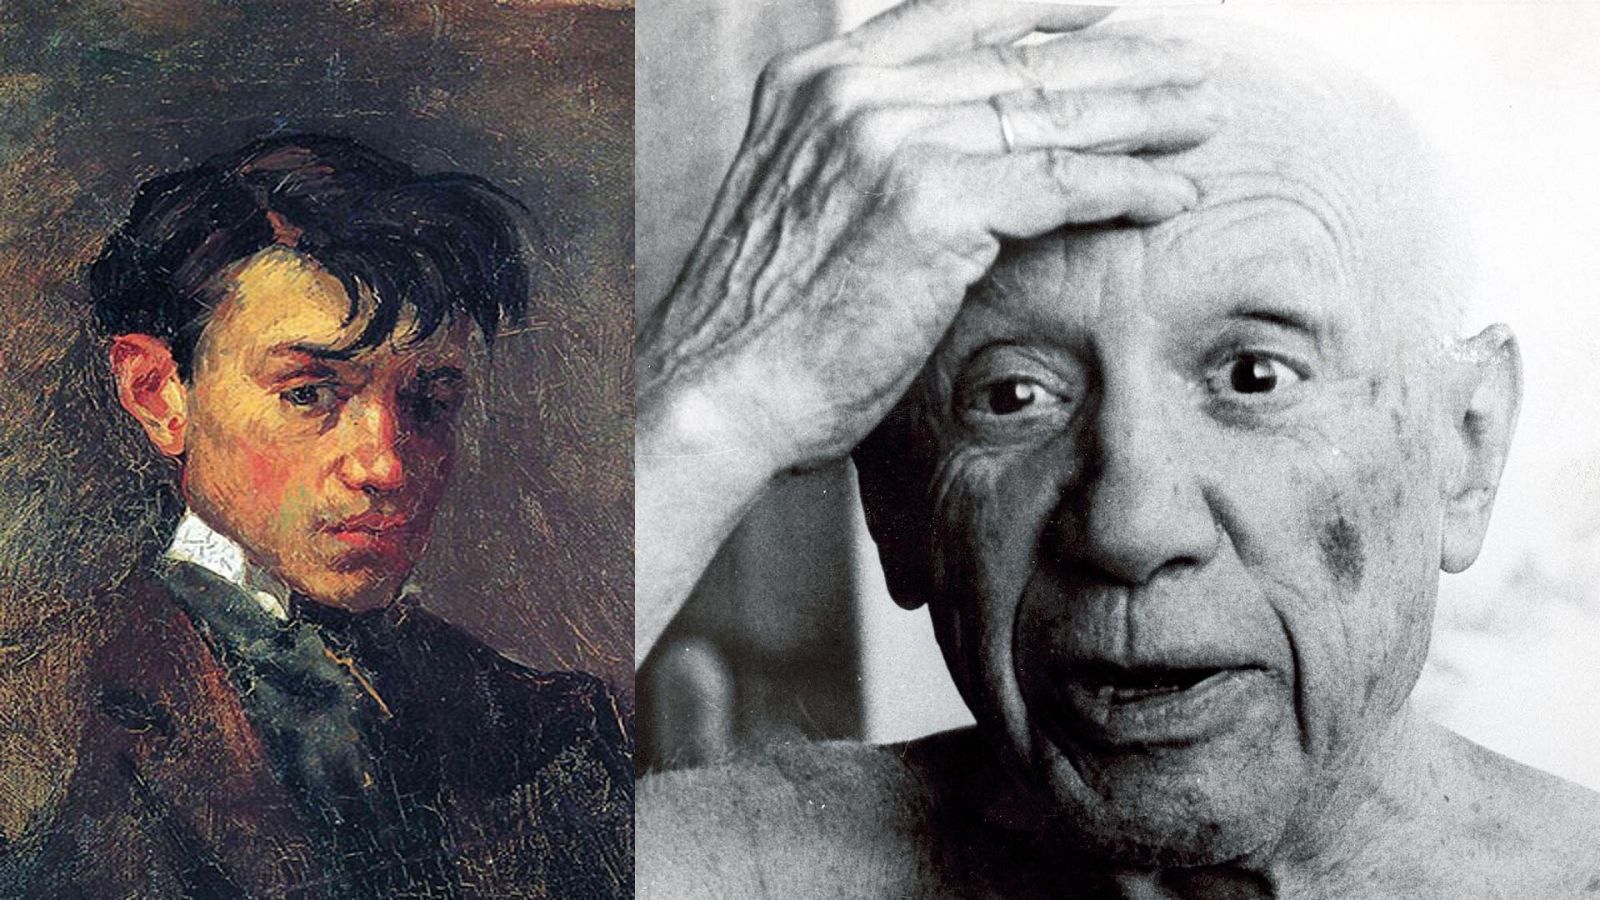 Un dels autoretrats que es va fer Picasso, de jove, i una foto quan ja era gran i un pintor consagrat